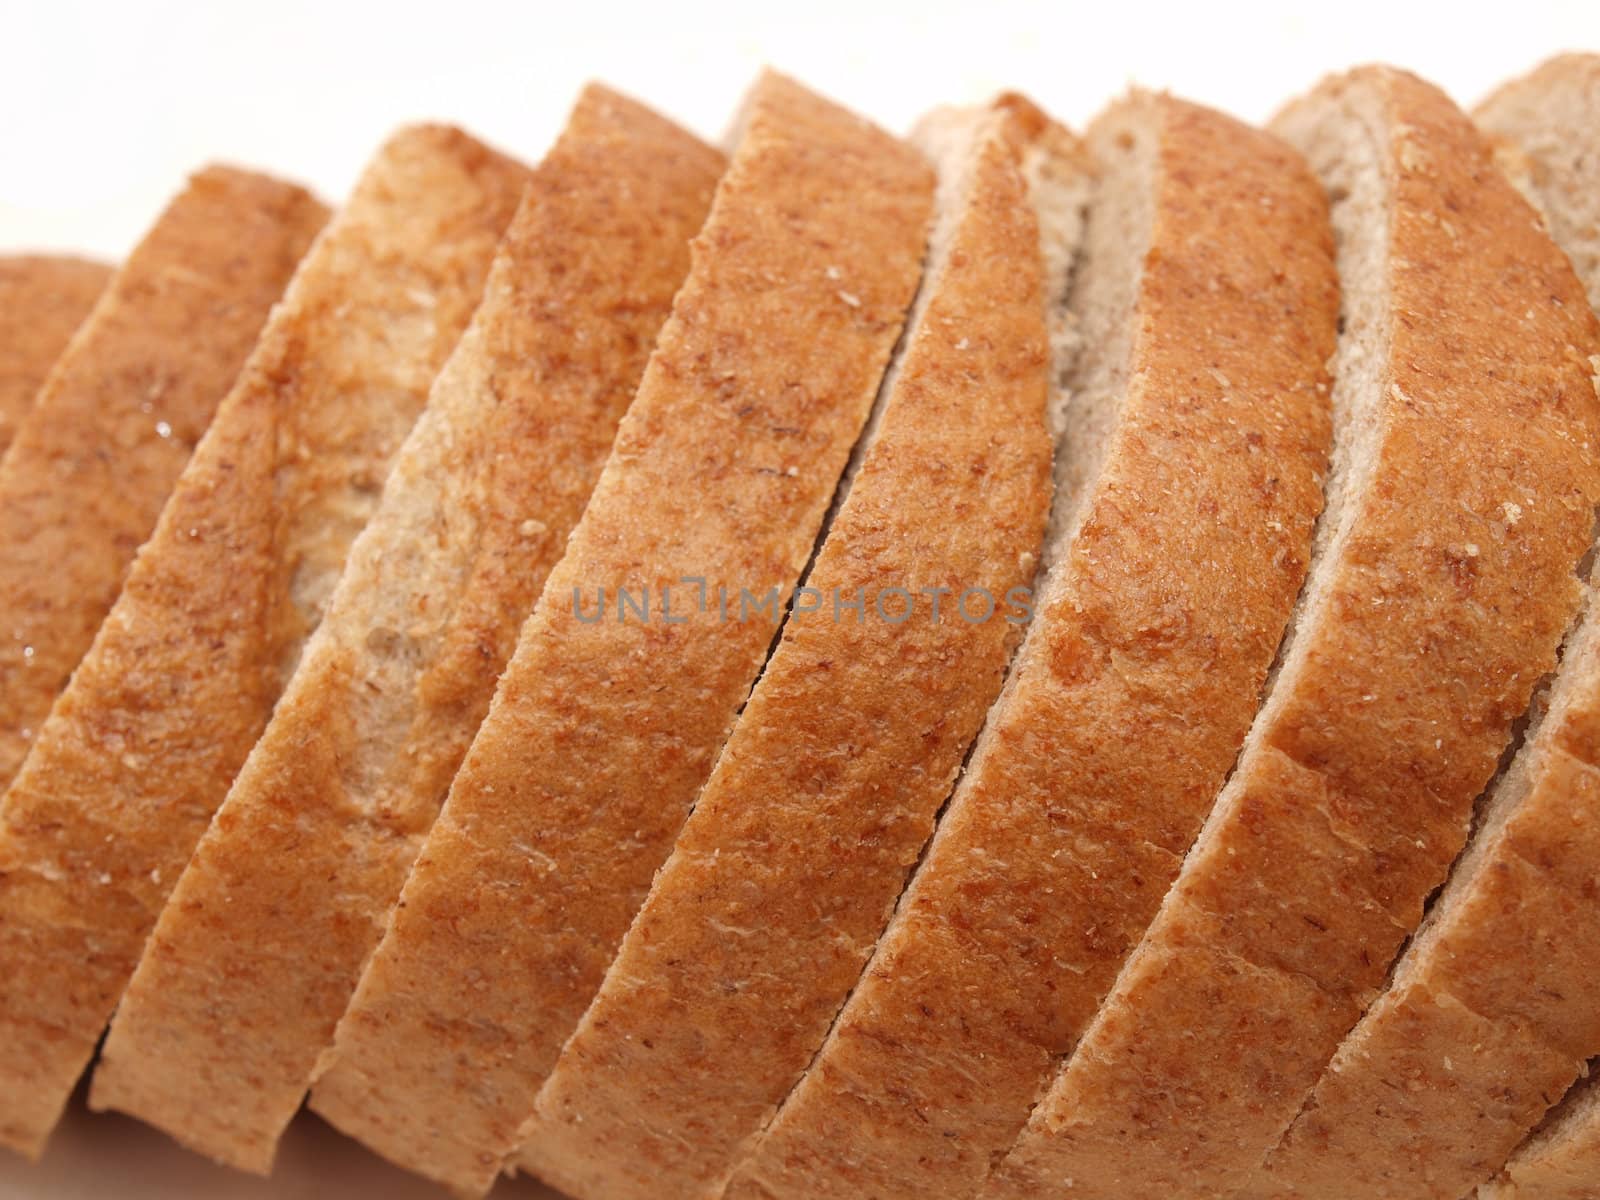 Bread  by Enskanto